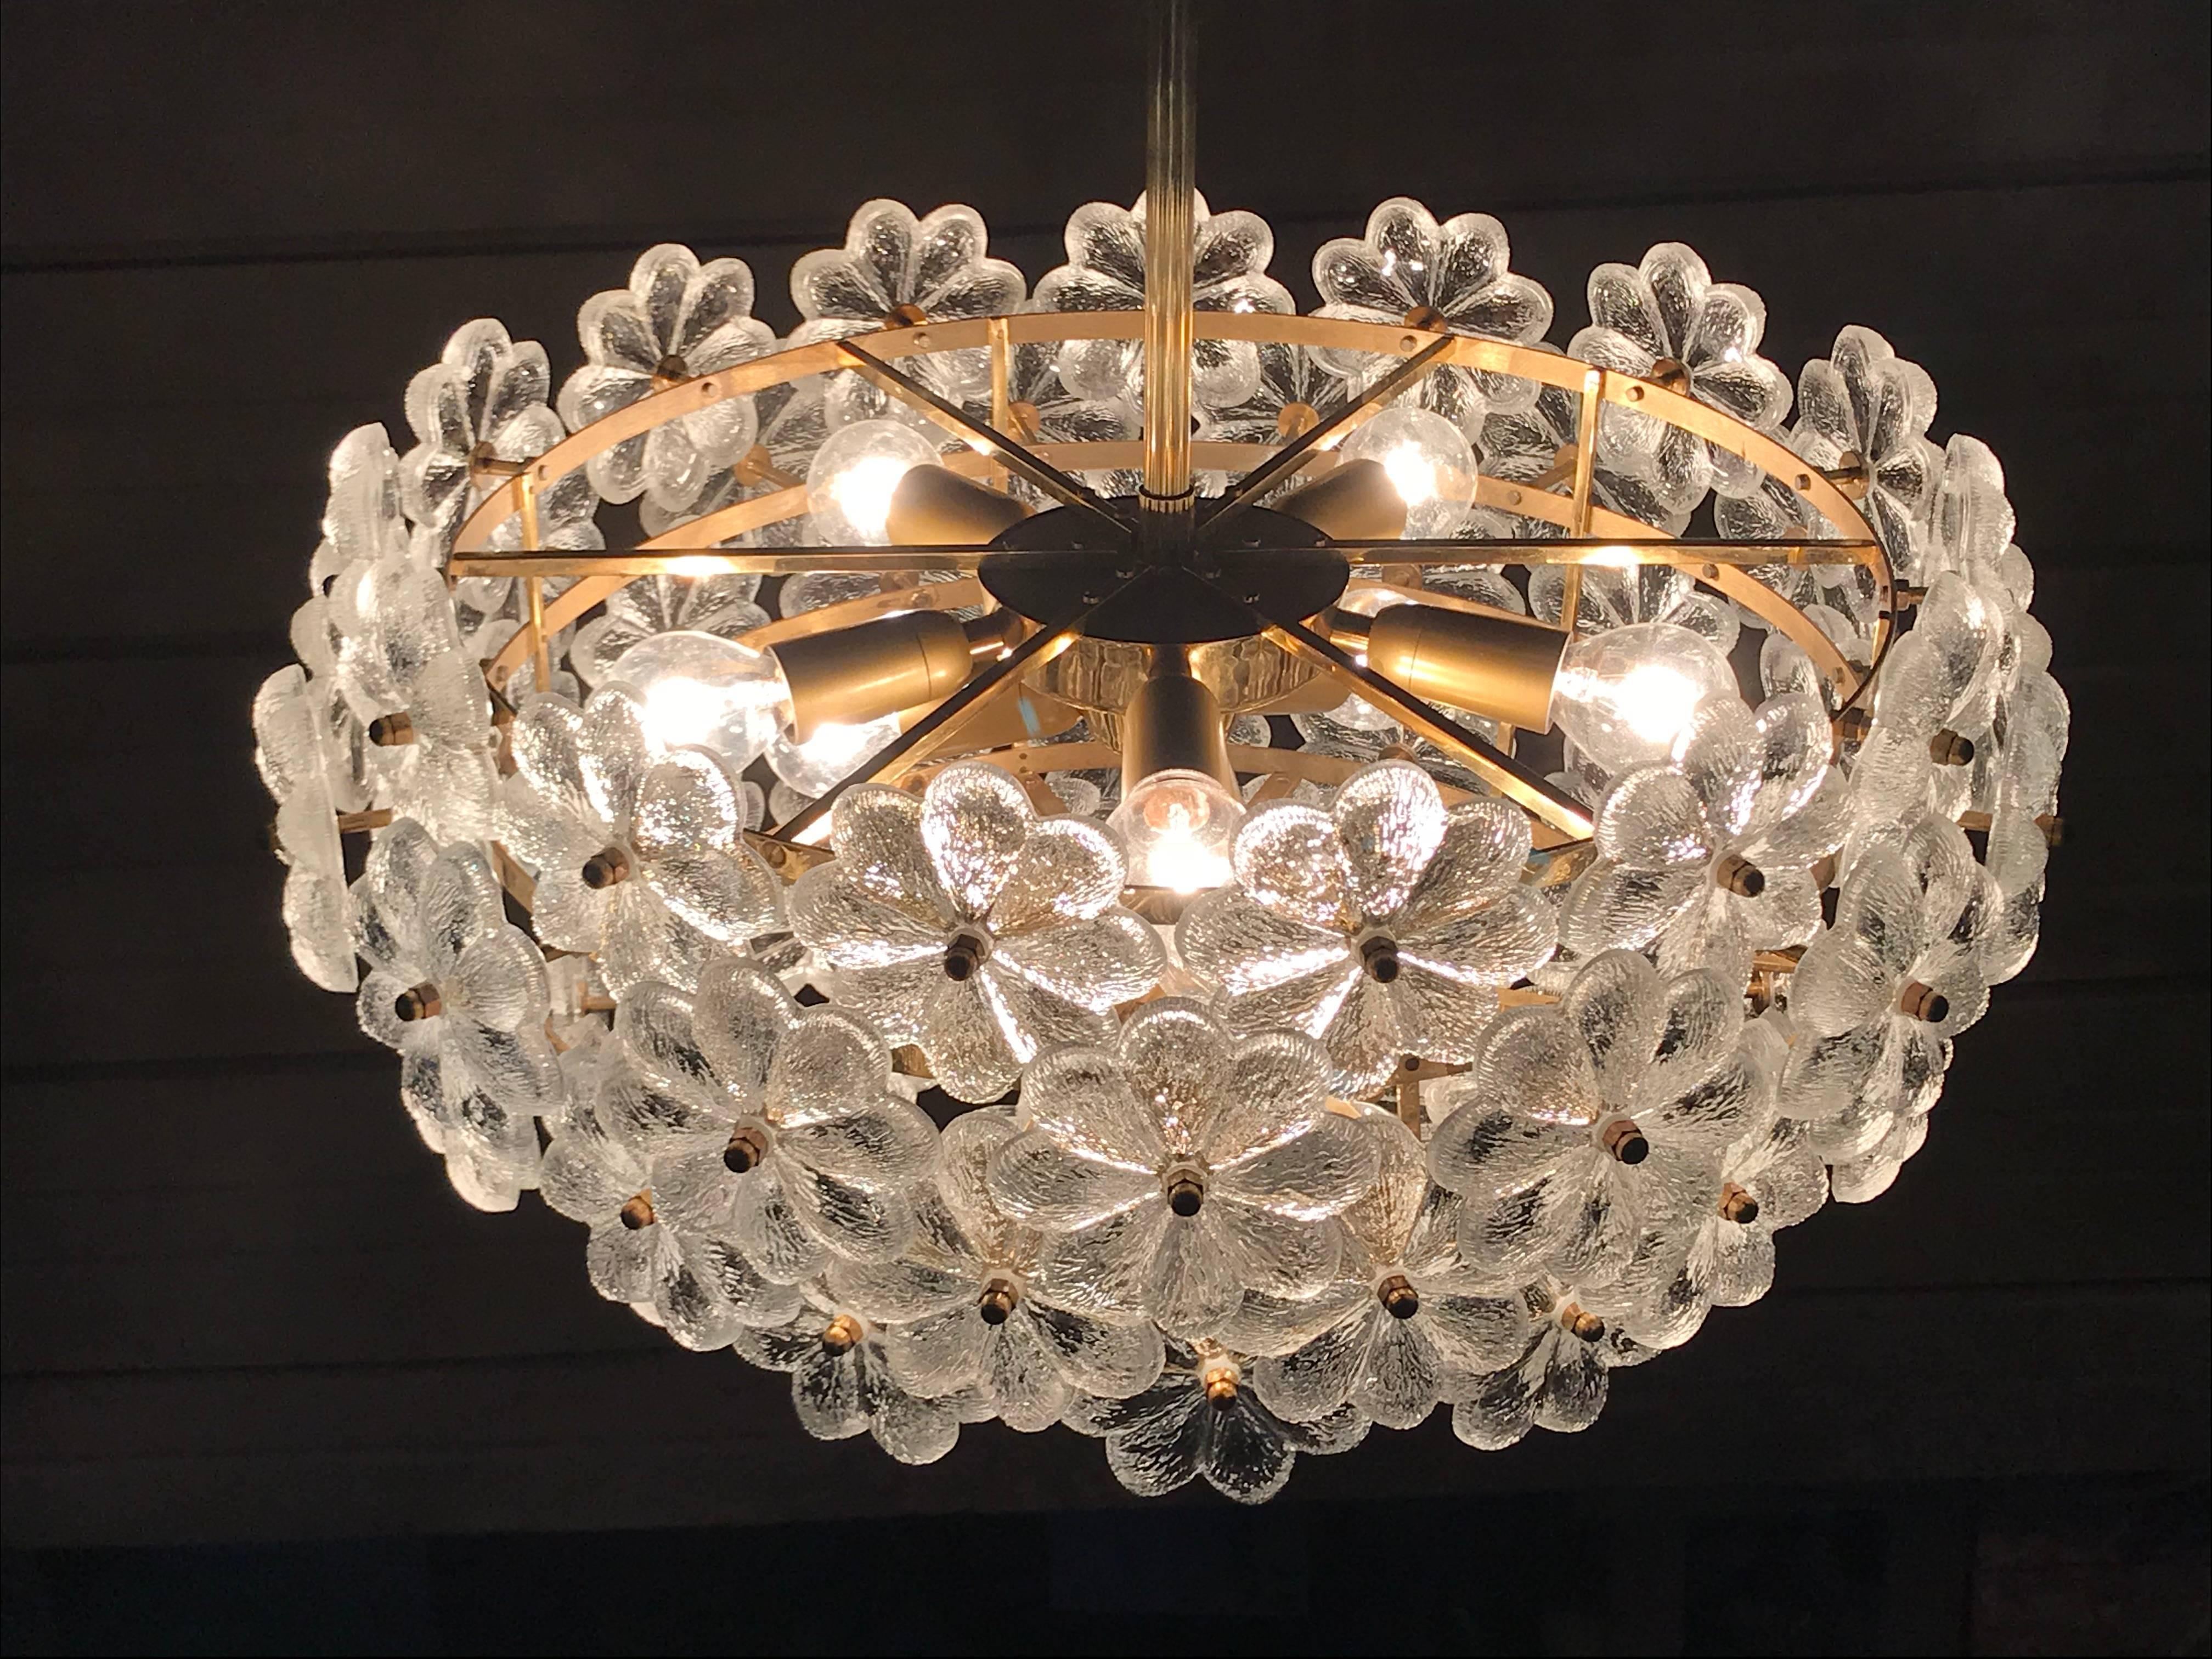 Ernst Palme floraler Sputnik-Kronleuchter aus Glas.
Er fasst acht E14-Glühbirnen mit bis zu 40 Watt (inklusive)
Durchmesser ist 21 Zoll durch 10 Zoll hoch, Gesamthöhe mit der Stange ist 32